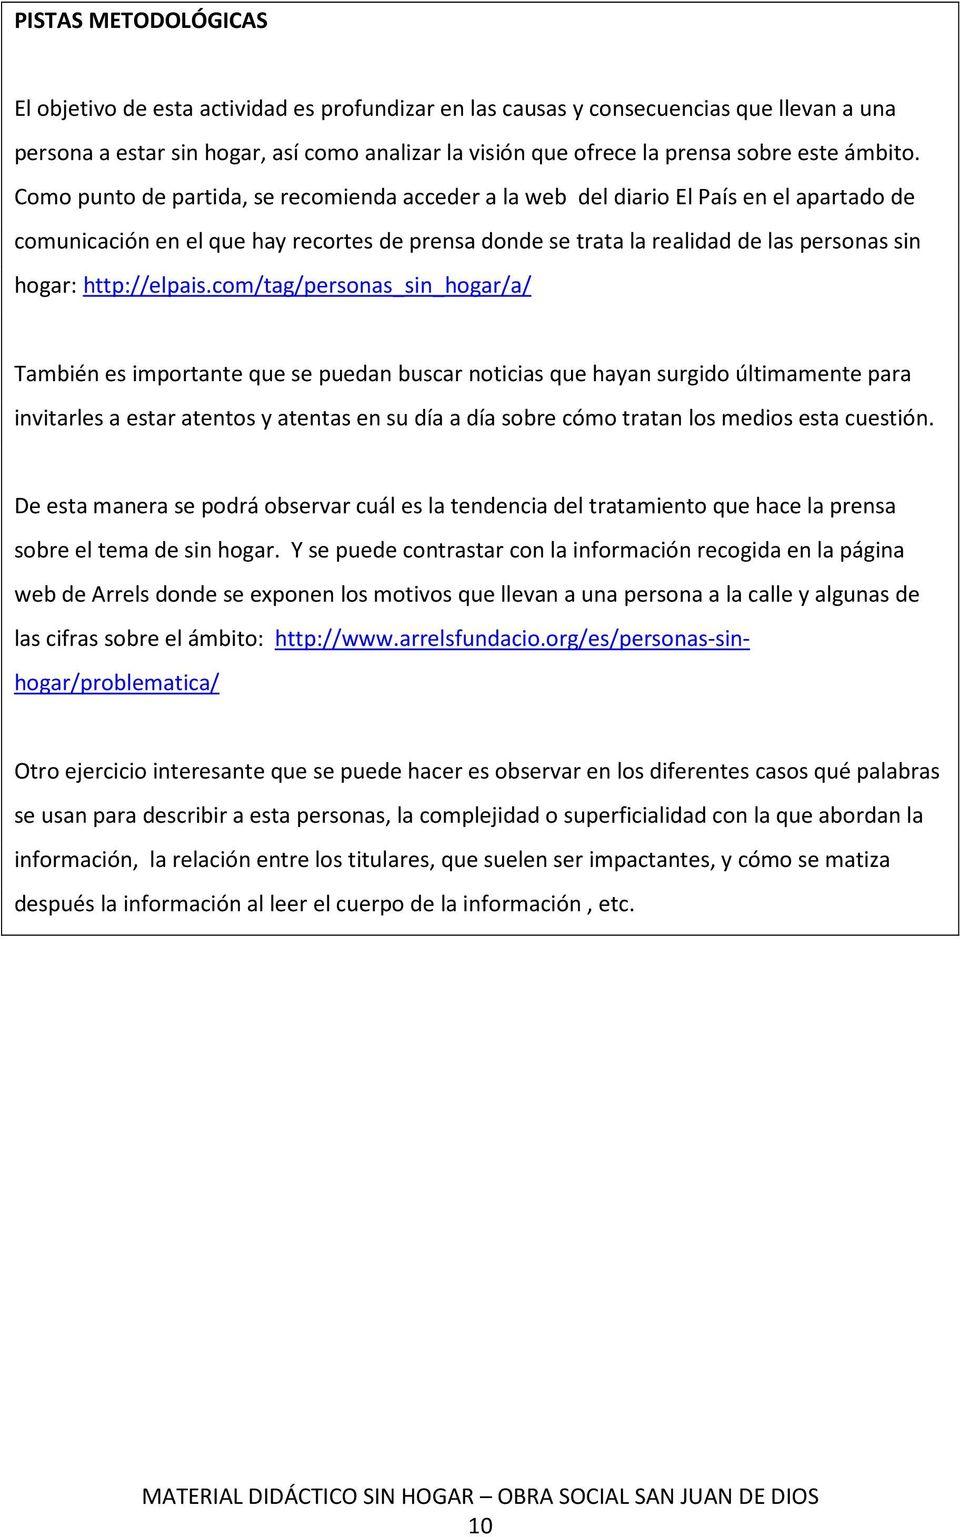 Como punto de partida, se recomienda acceder a la web del diario El País en el apartado de comunicación en el que hay recortes de prensa donde se trata la realidad de las personas sin hogar: